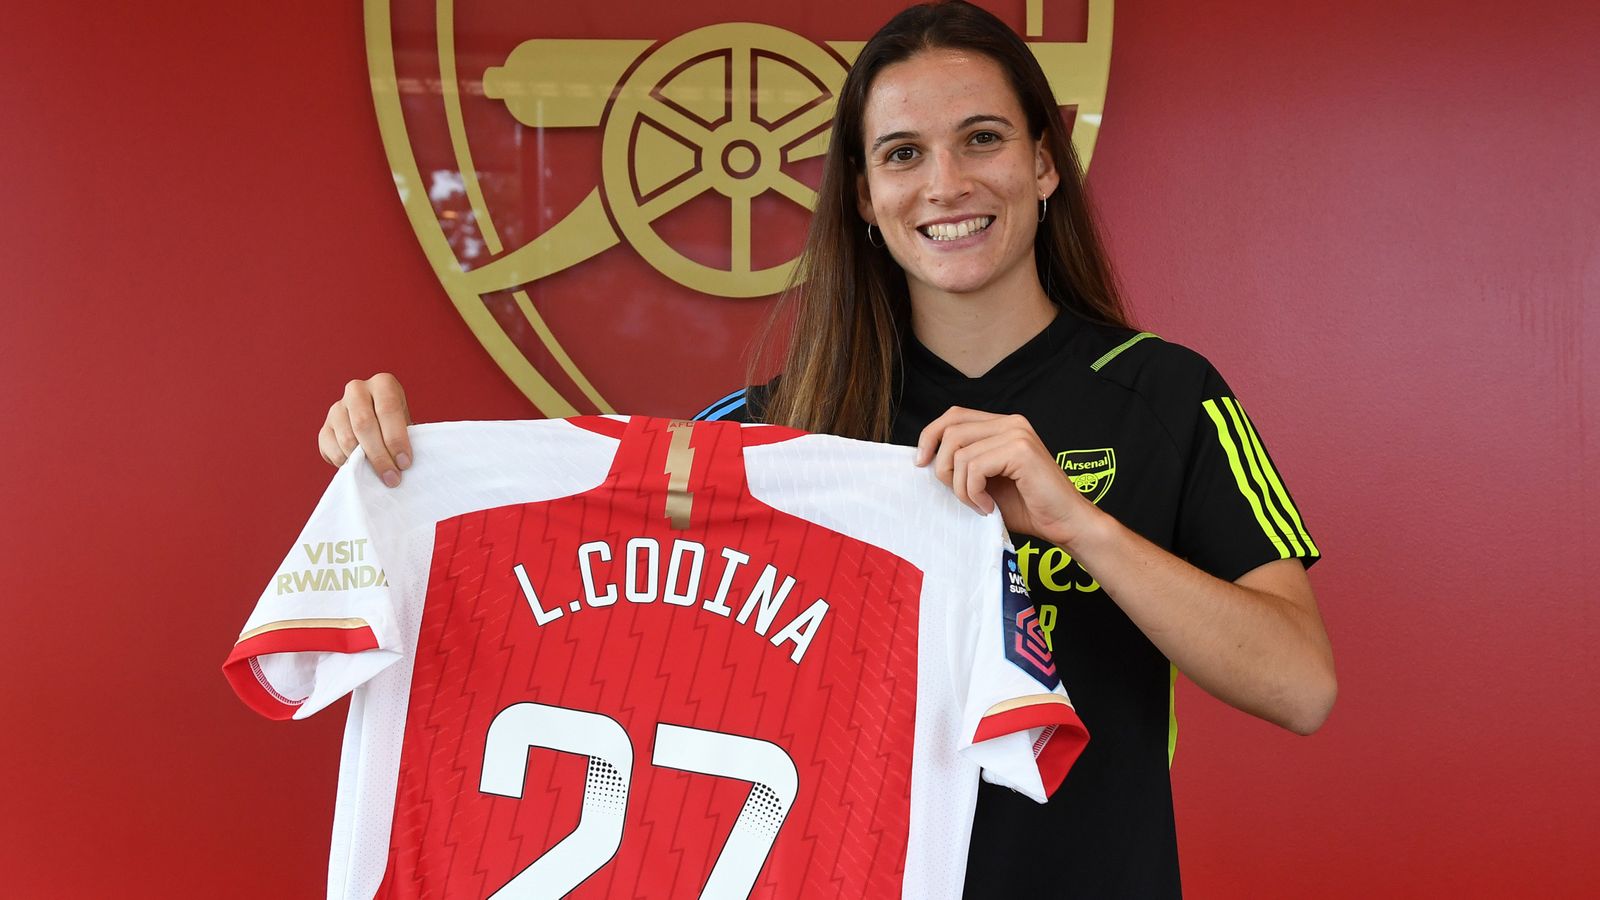 Laia Codina: El Arsenal Ladies ficha a la defensora española Femini, ganadora de la Copa del Mundo, procedente del Barcelona |  noticias de futbol